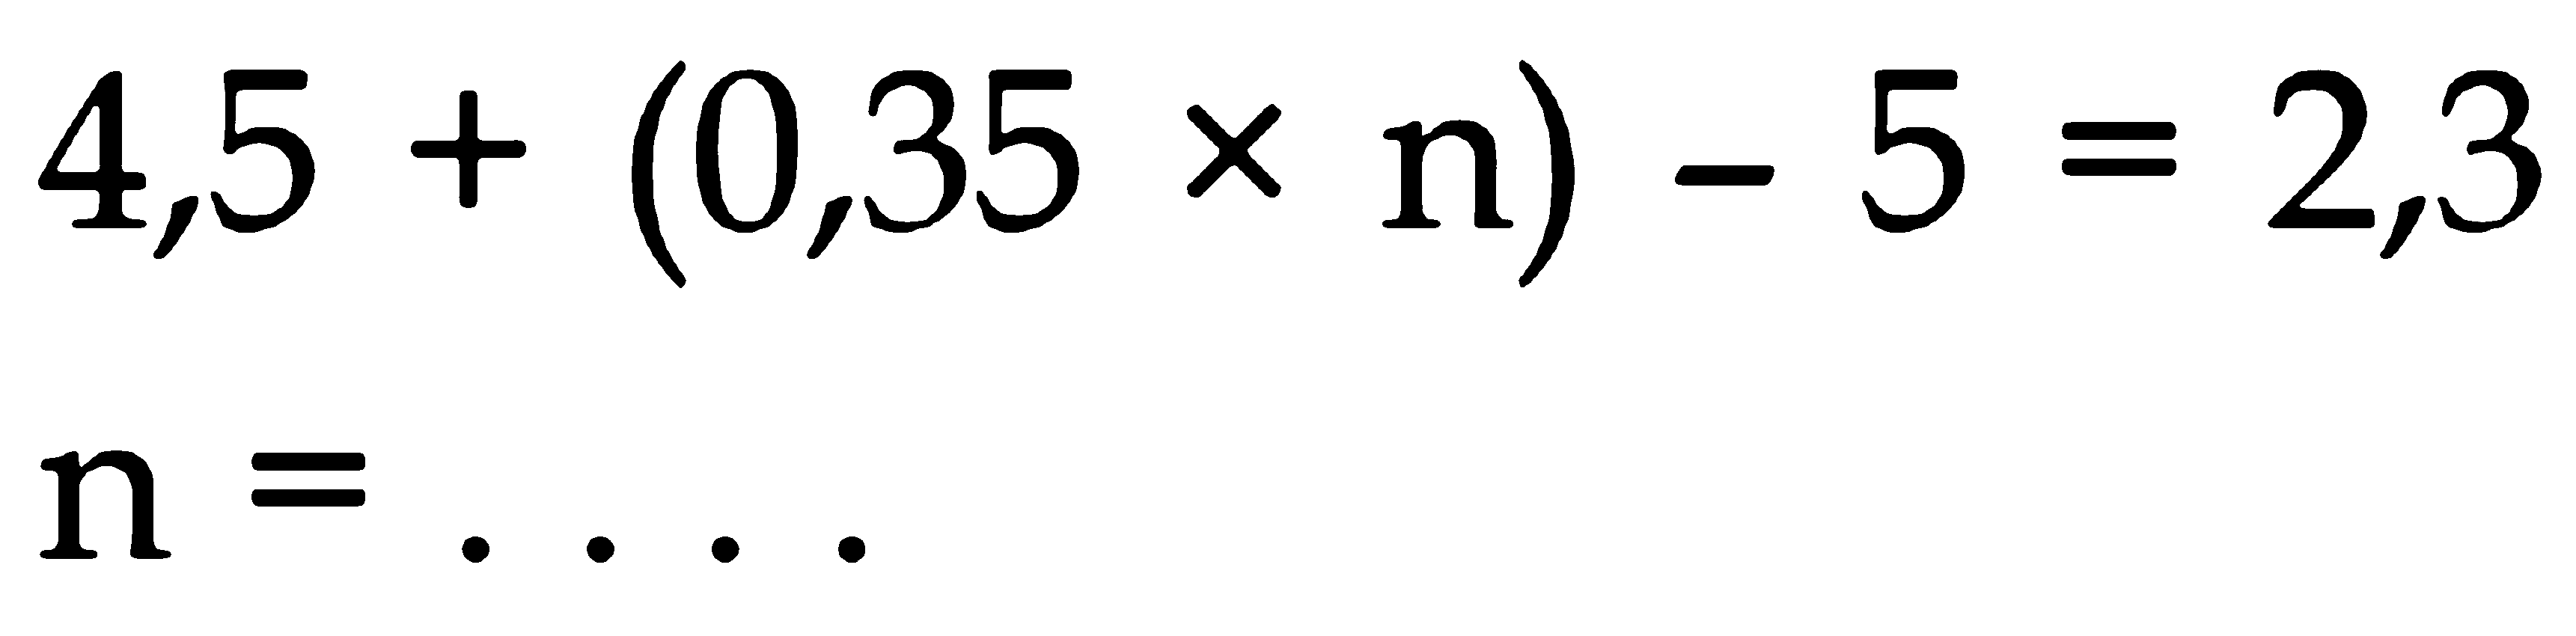 4,5 + (0,35 x n) - 5 = 2,3 n = ....